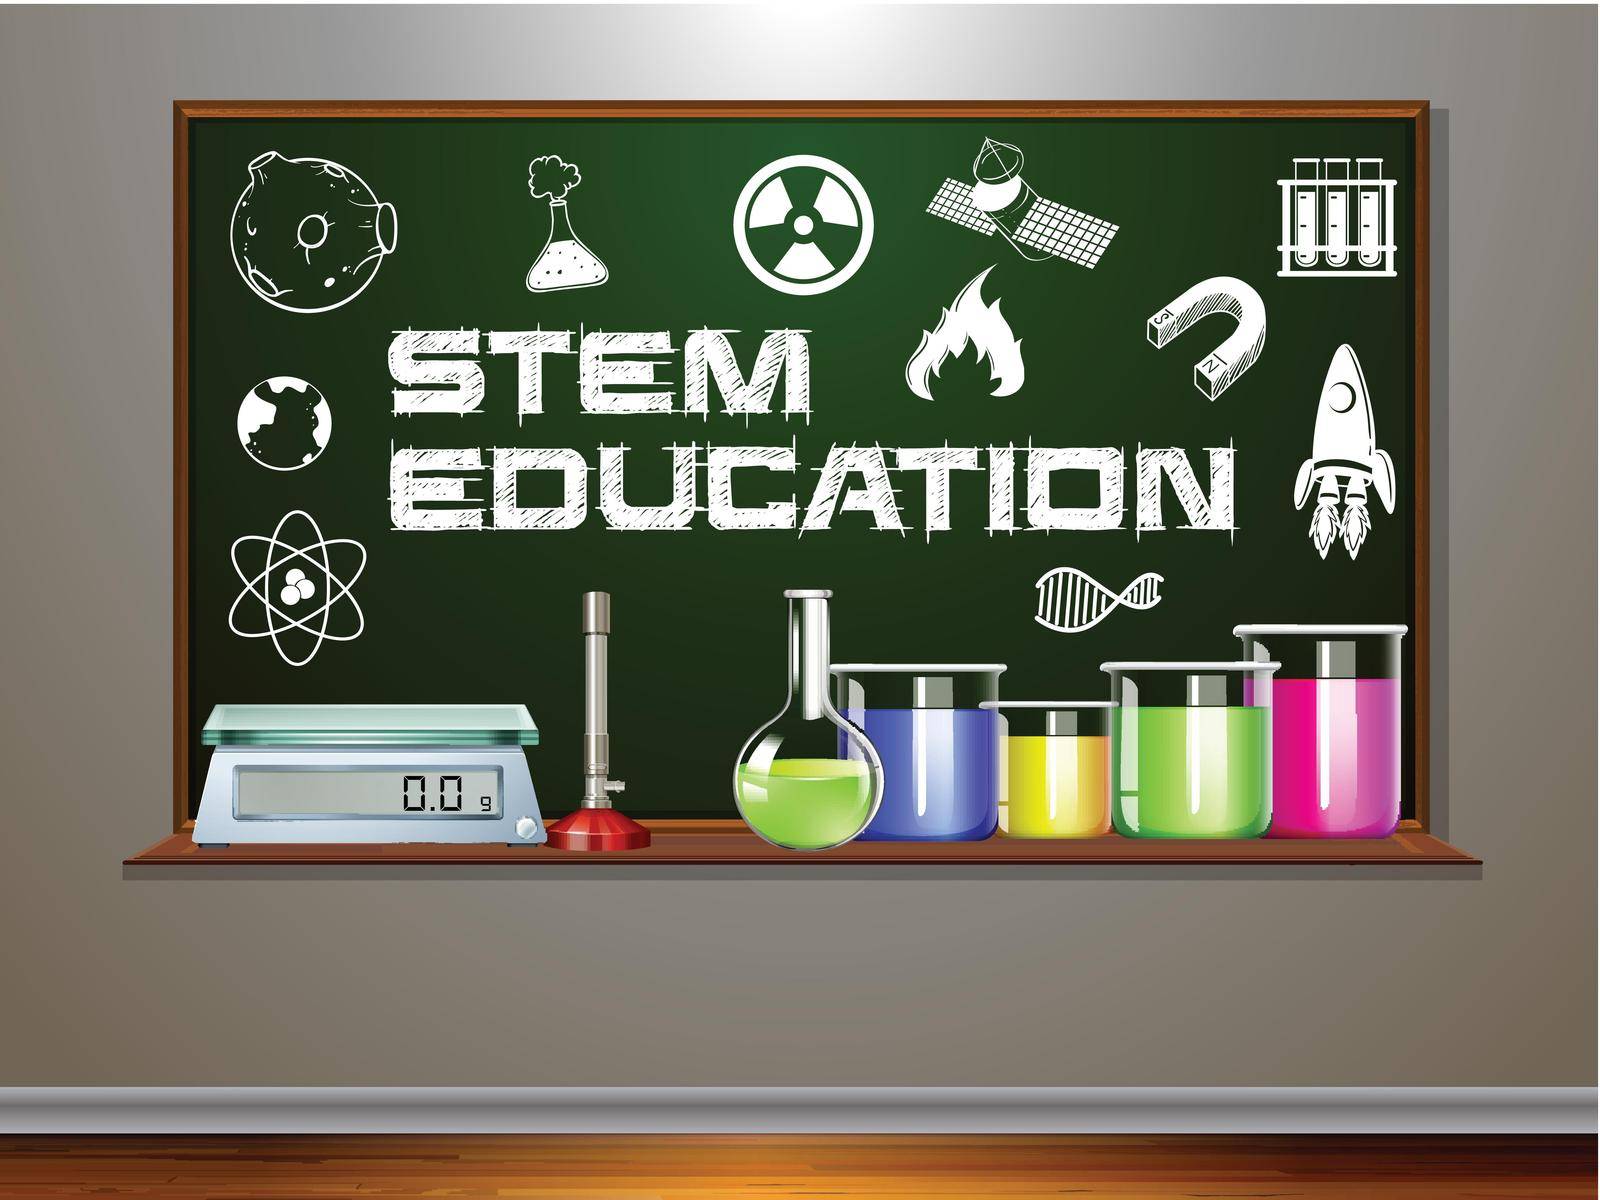 STEM education on blackboard illustration